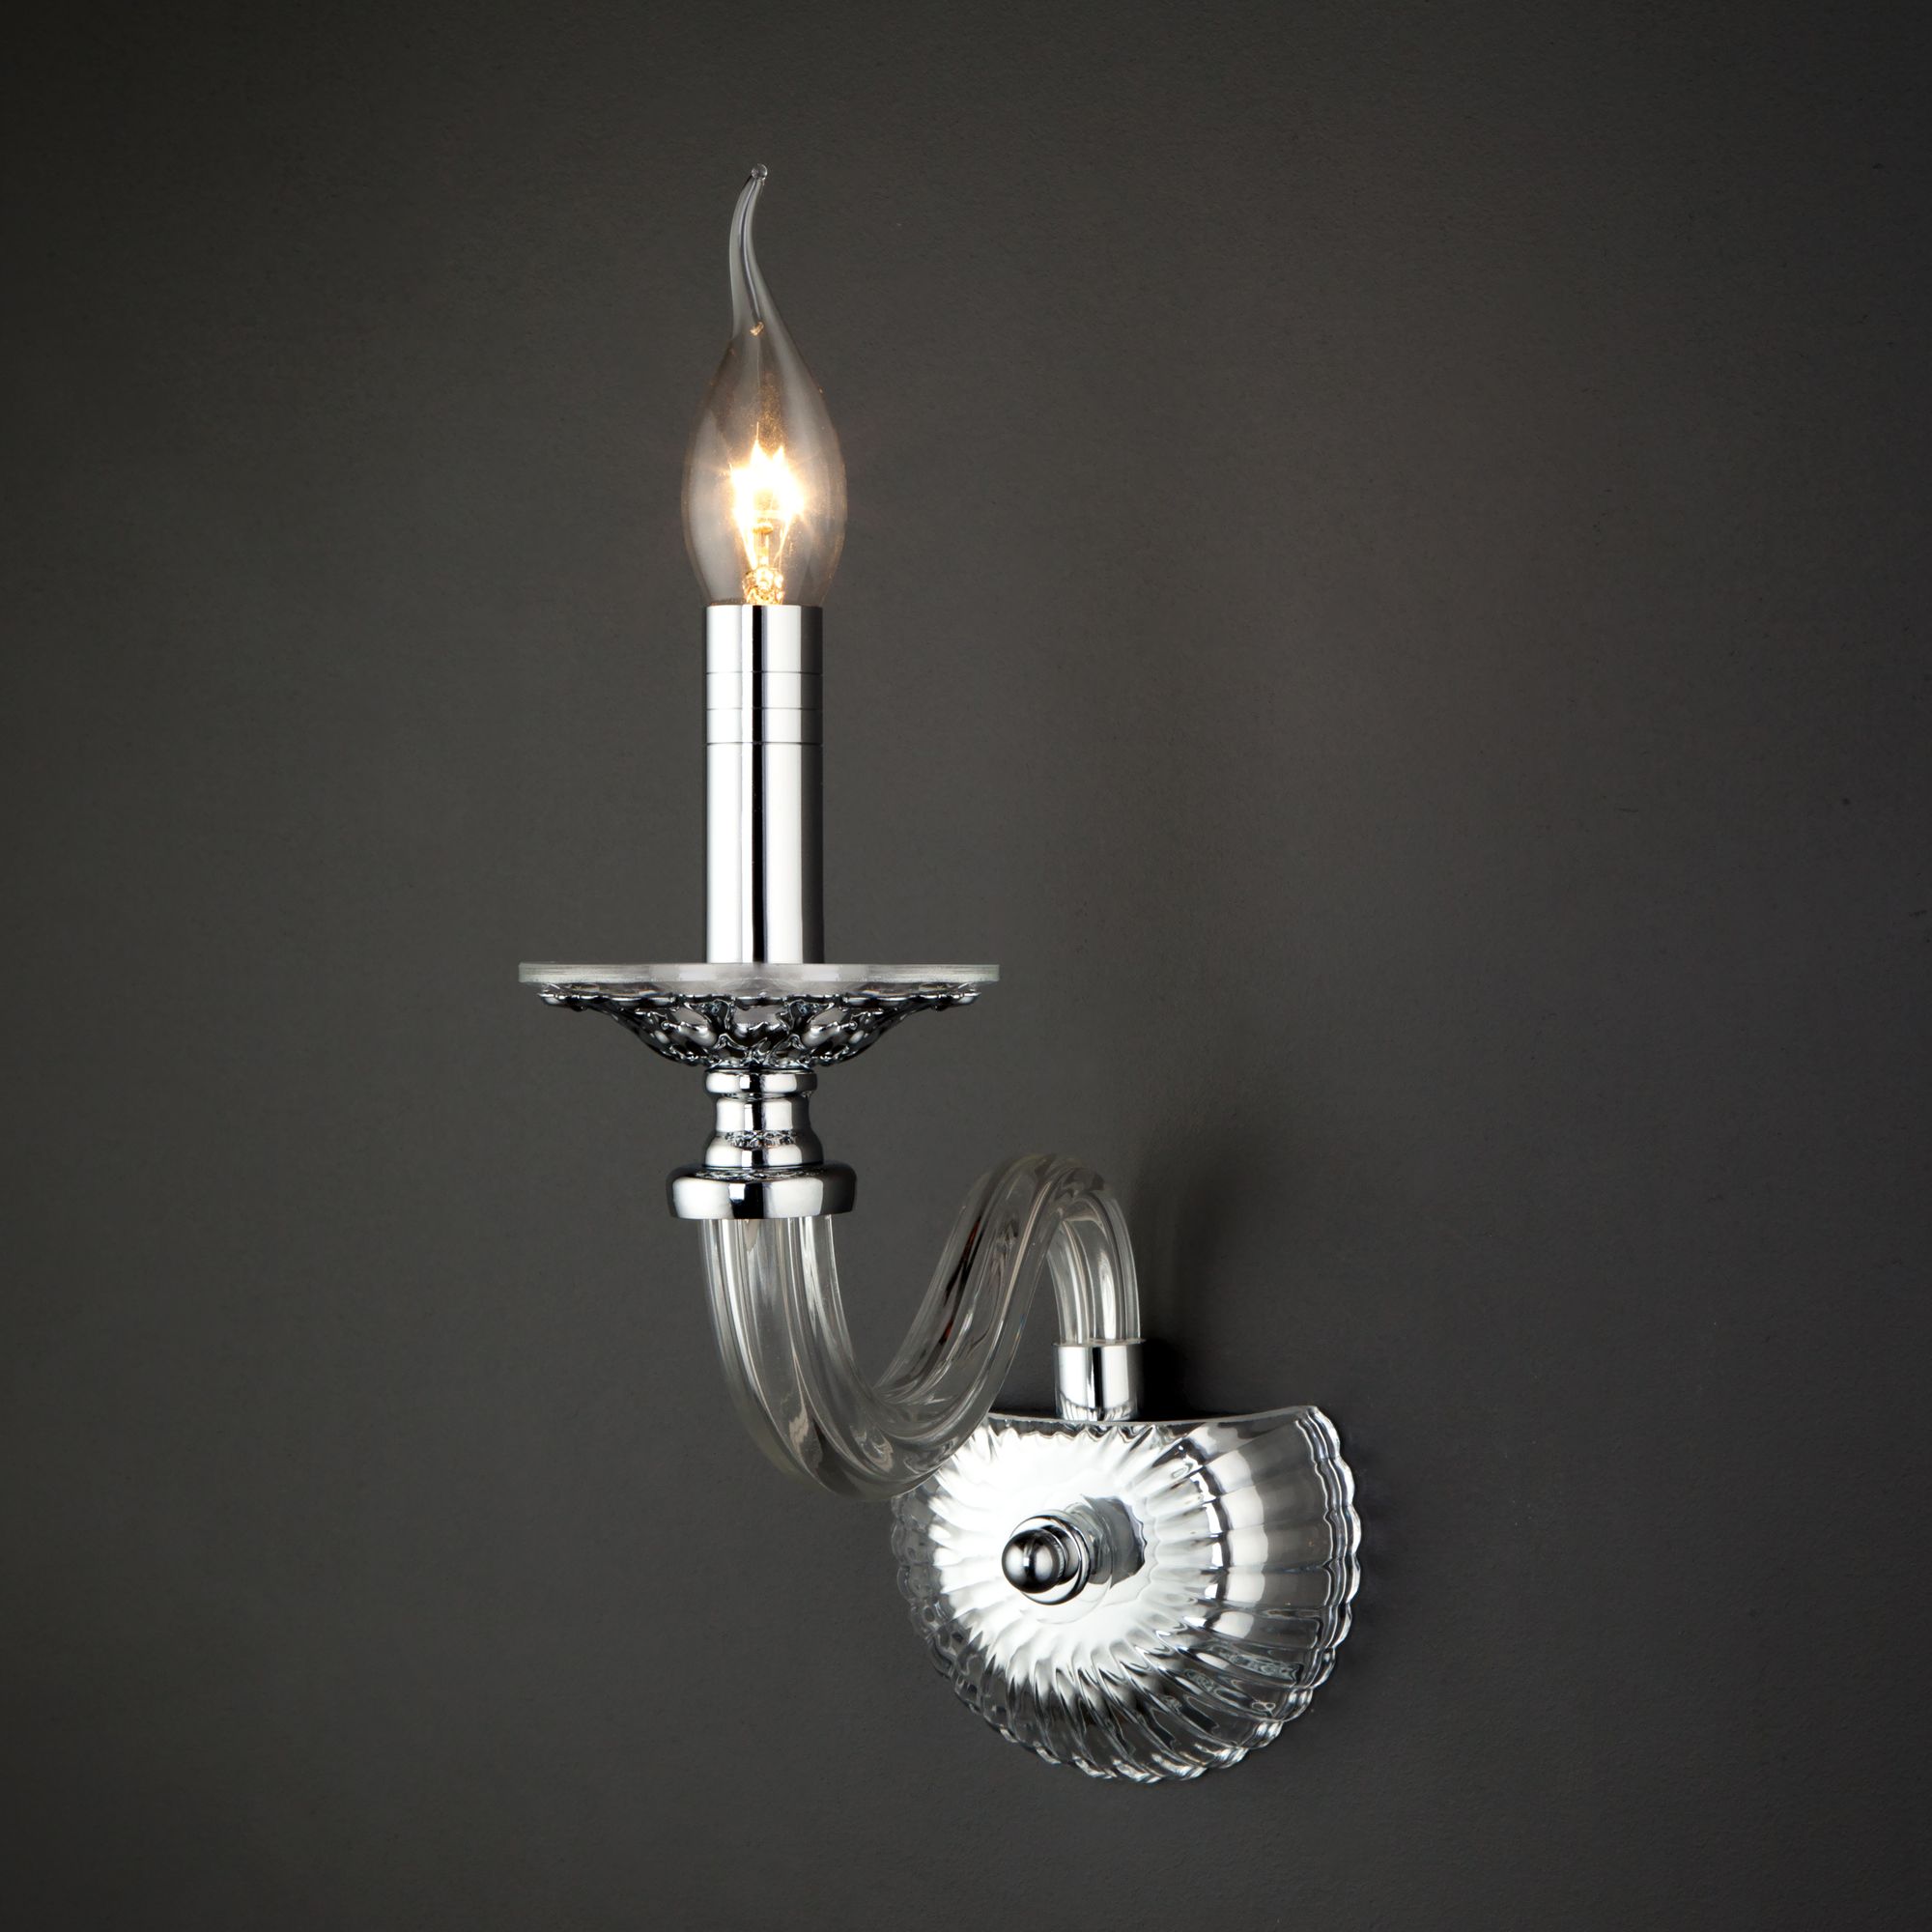 Настенный светильник в классическом стиле Bogate's Olenna 338/1. Фото 4